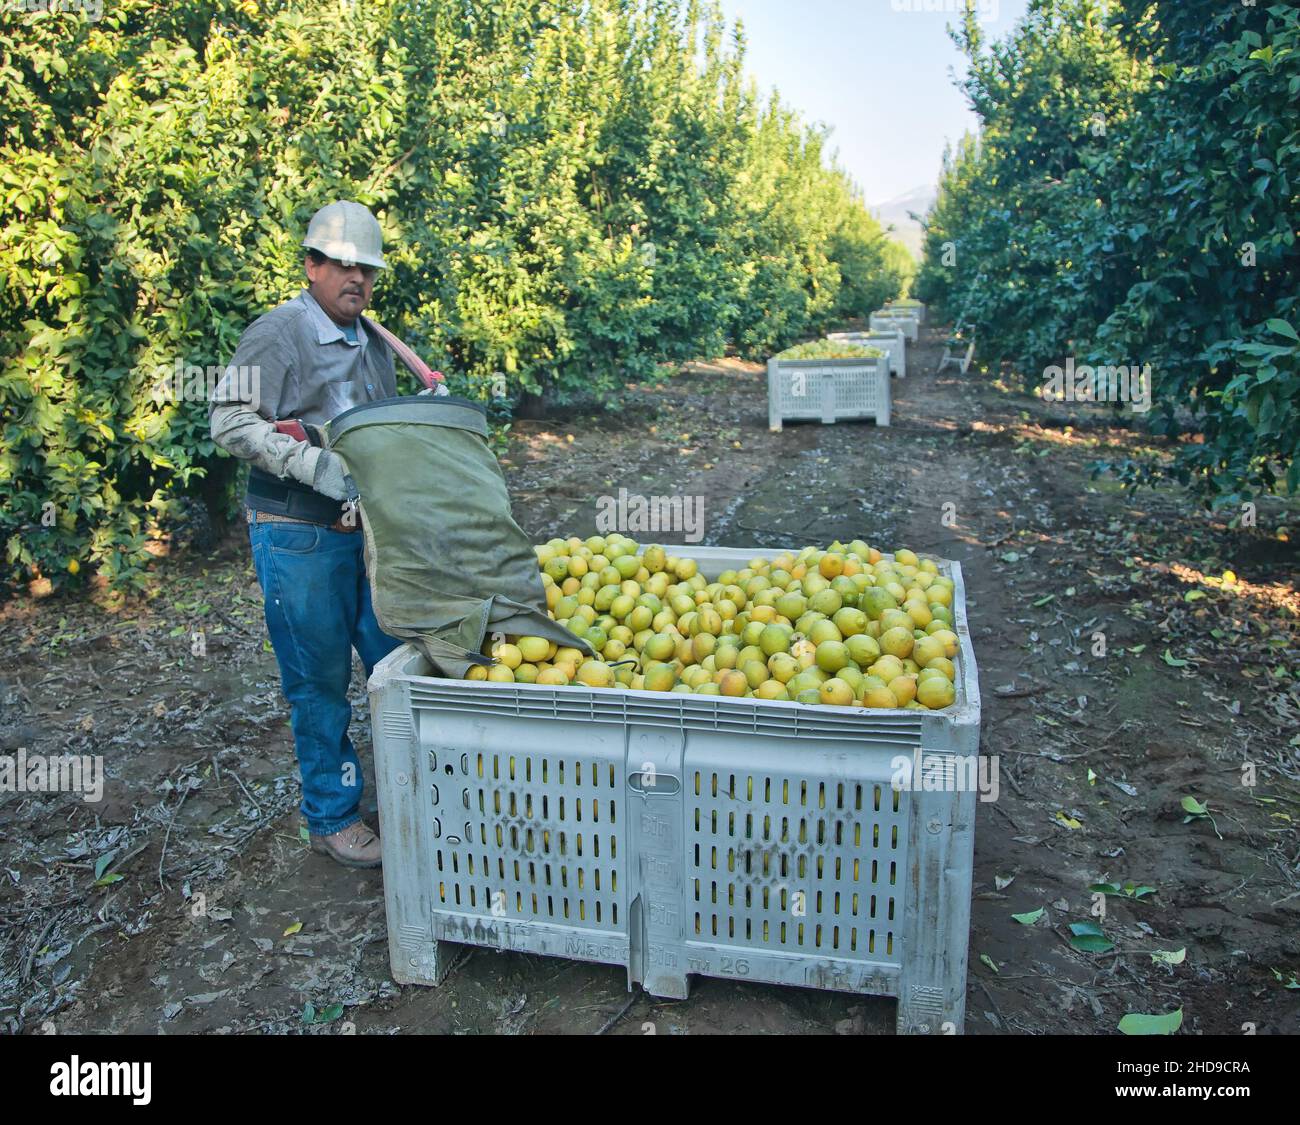 Lemon Harvest, hispanic, worker depositing harvested lemons into transport bin 'Citrus limon', early morning light, California, Stock Photo